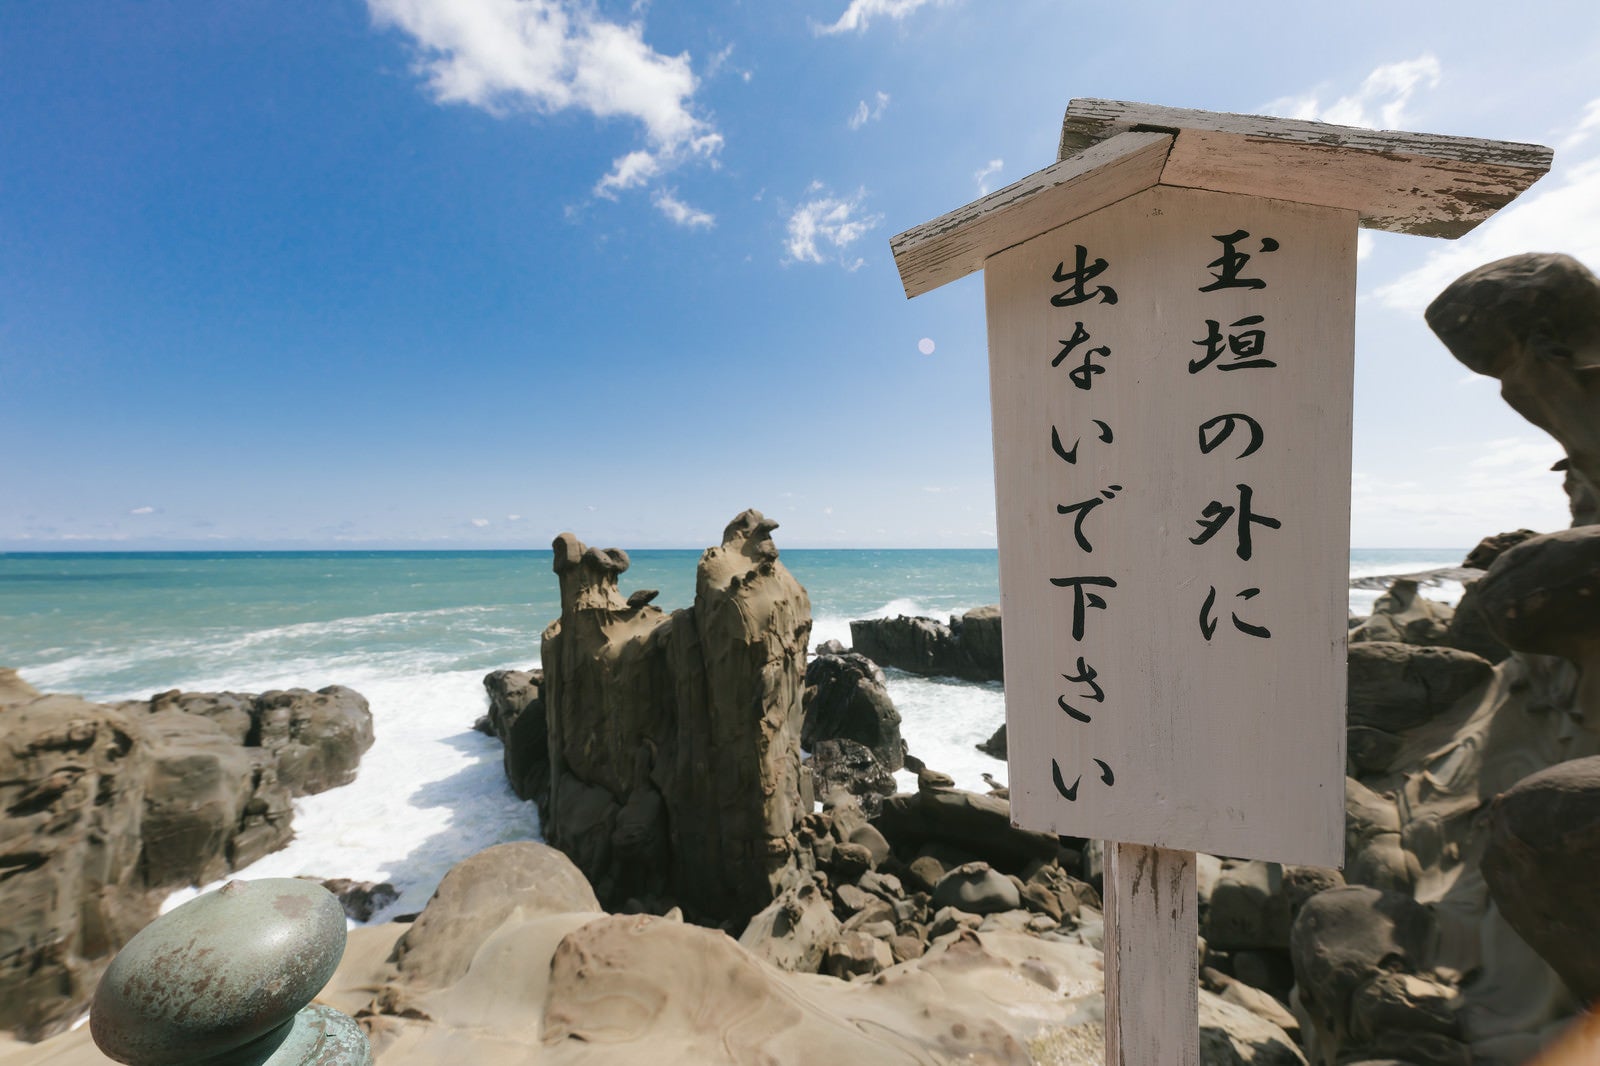 「断崖絶壁にある鵜戸神宮の警告板「玉垣の外に出ないで下さい」」の写真